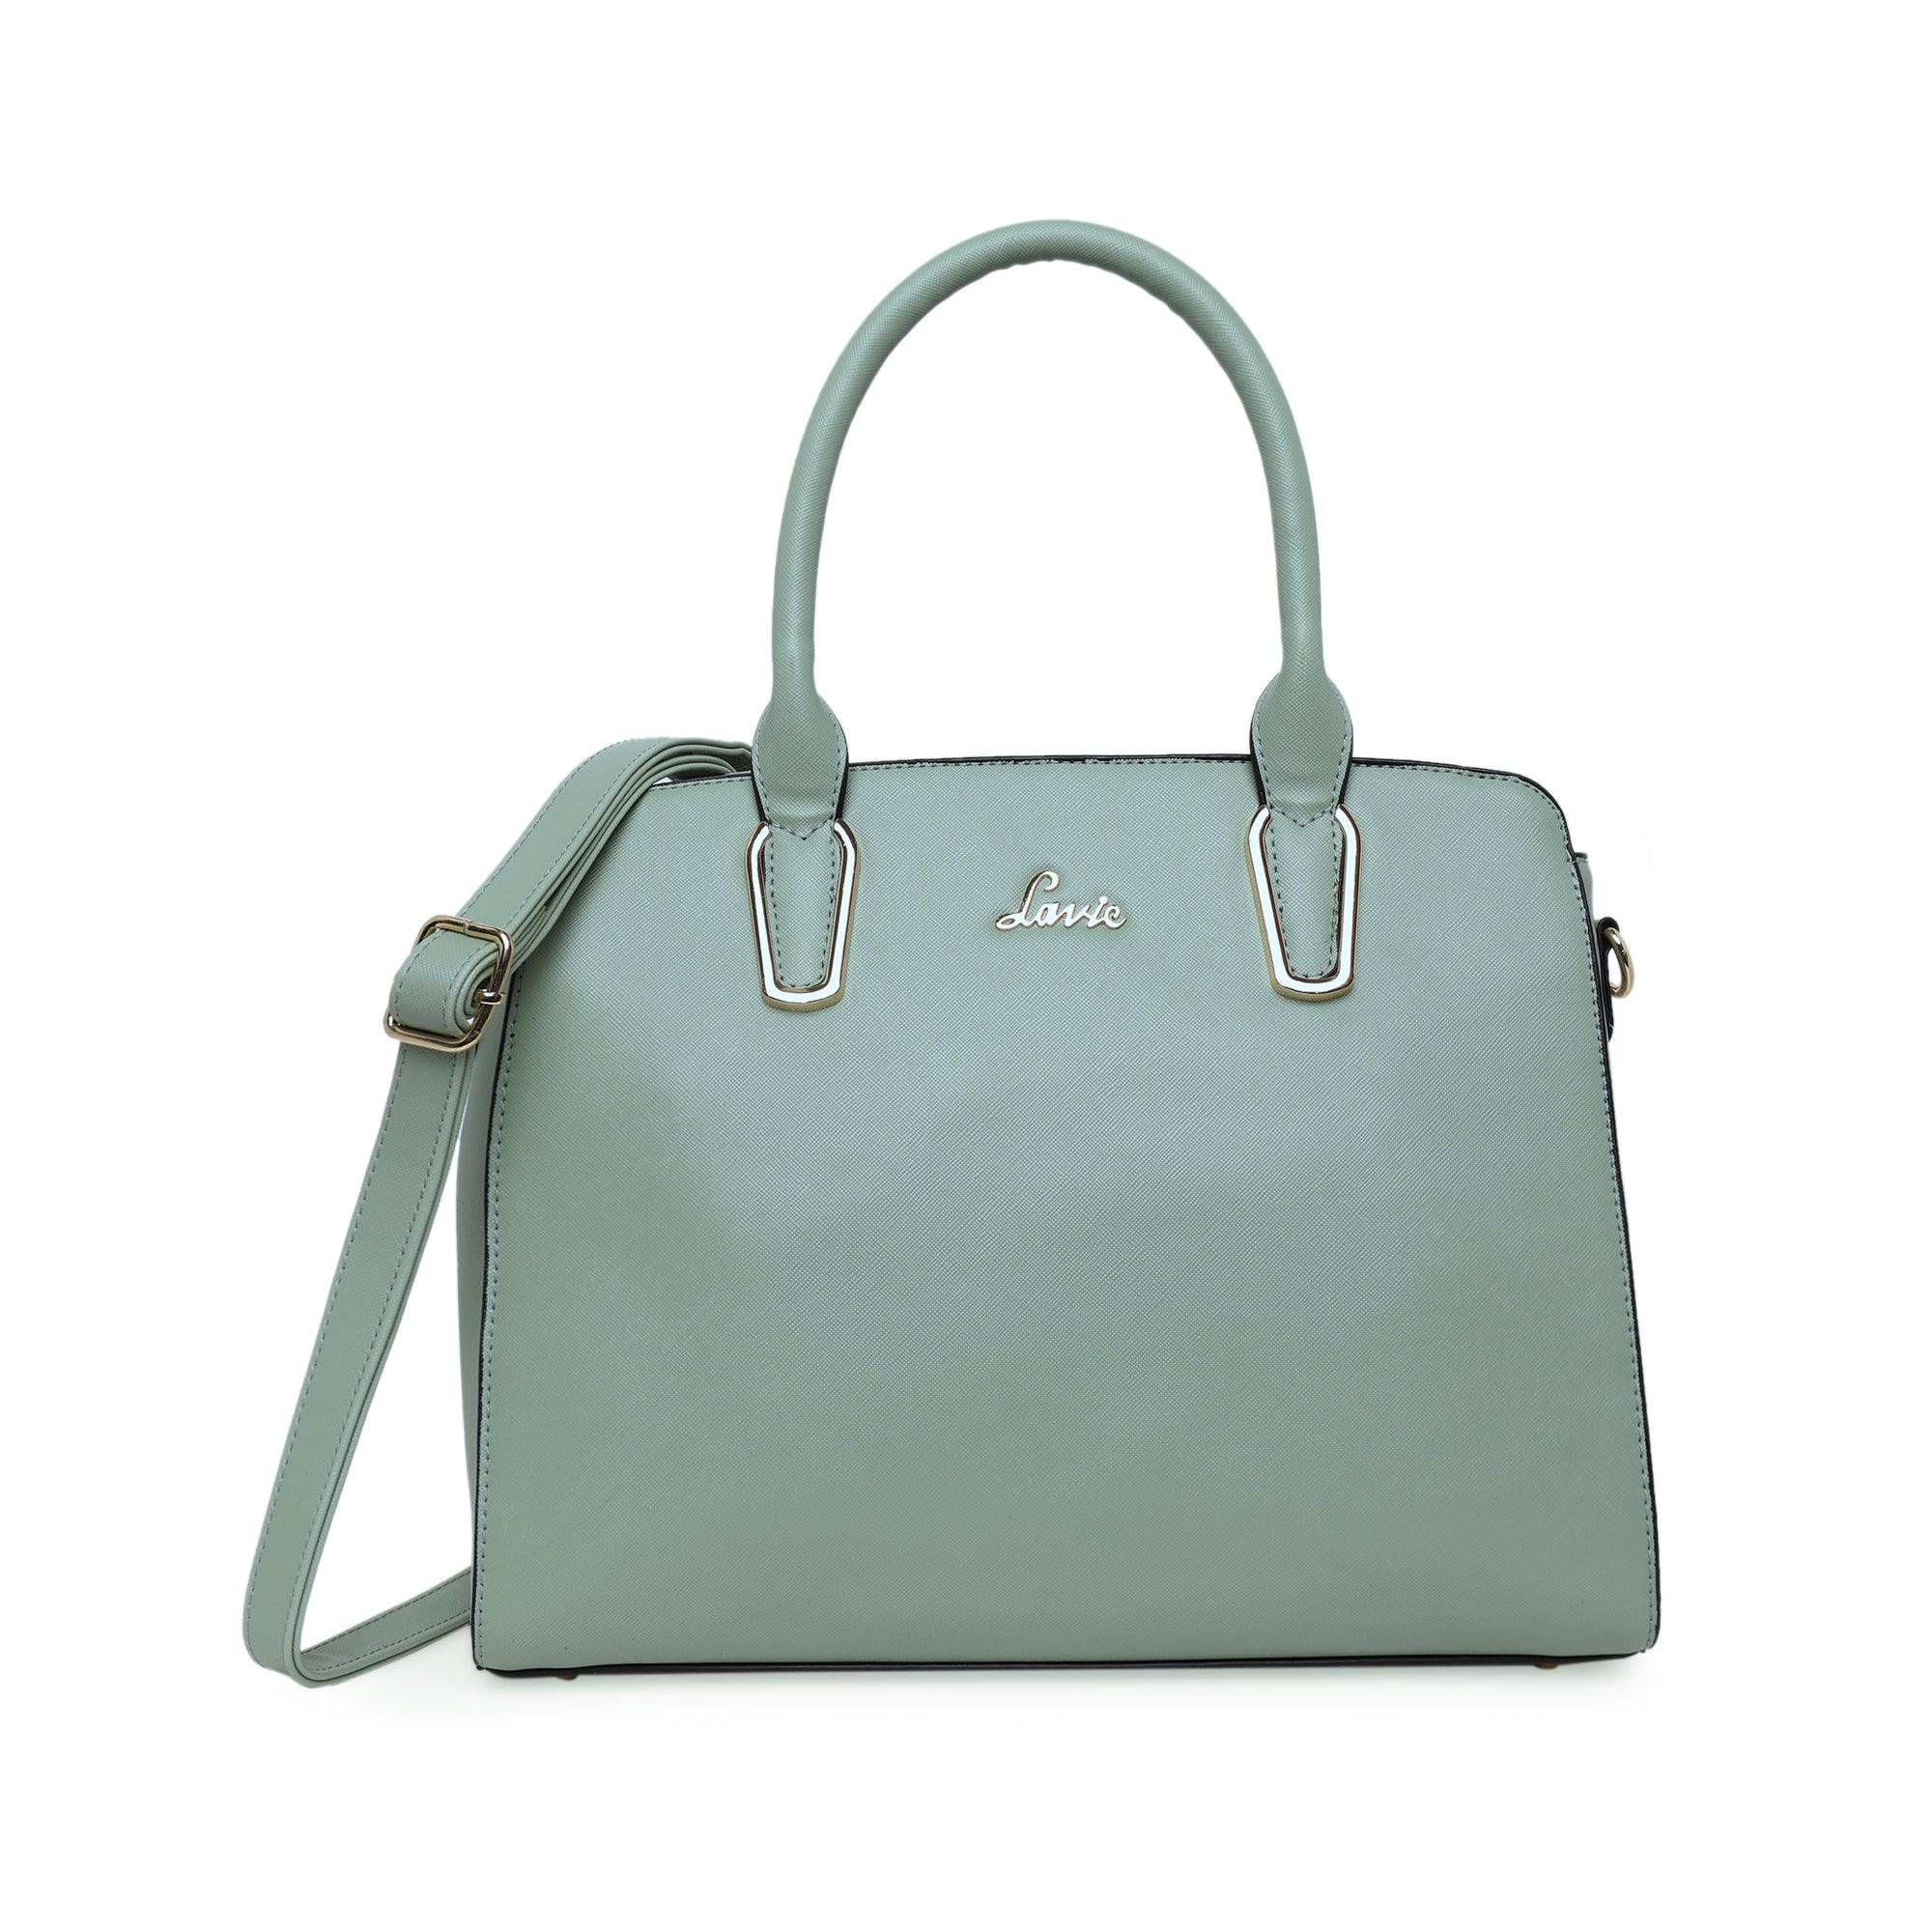 Buy LAVIE Women Grey Handbag GREY Online @ Best Price in India |  Flipkart.com